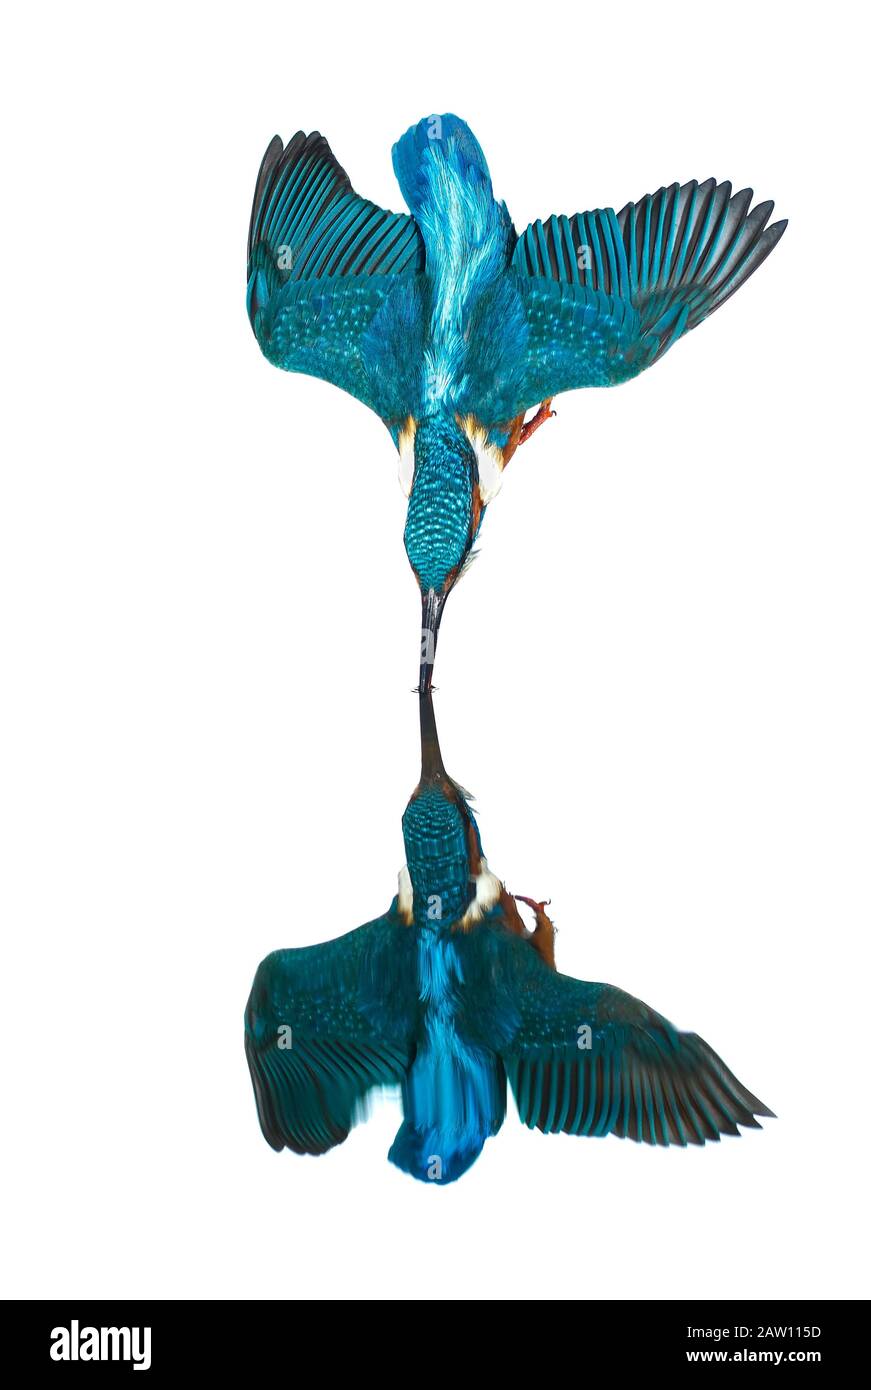 Kingfisher comune (Alcedo atthis) immersioni, Salamanca, Spagna Foto Stock